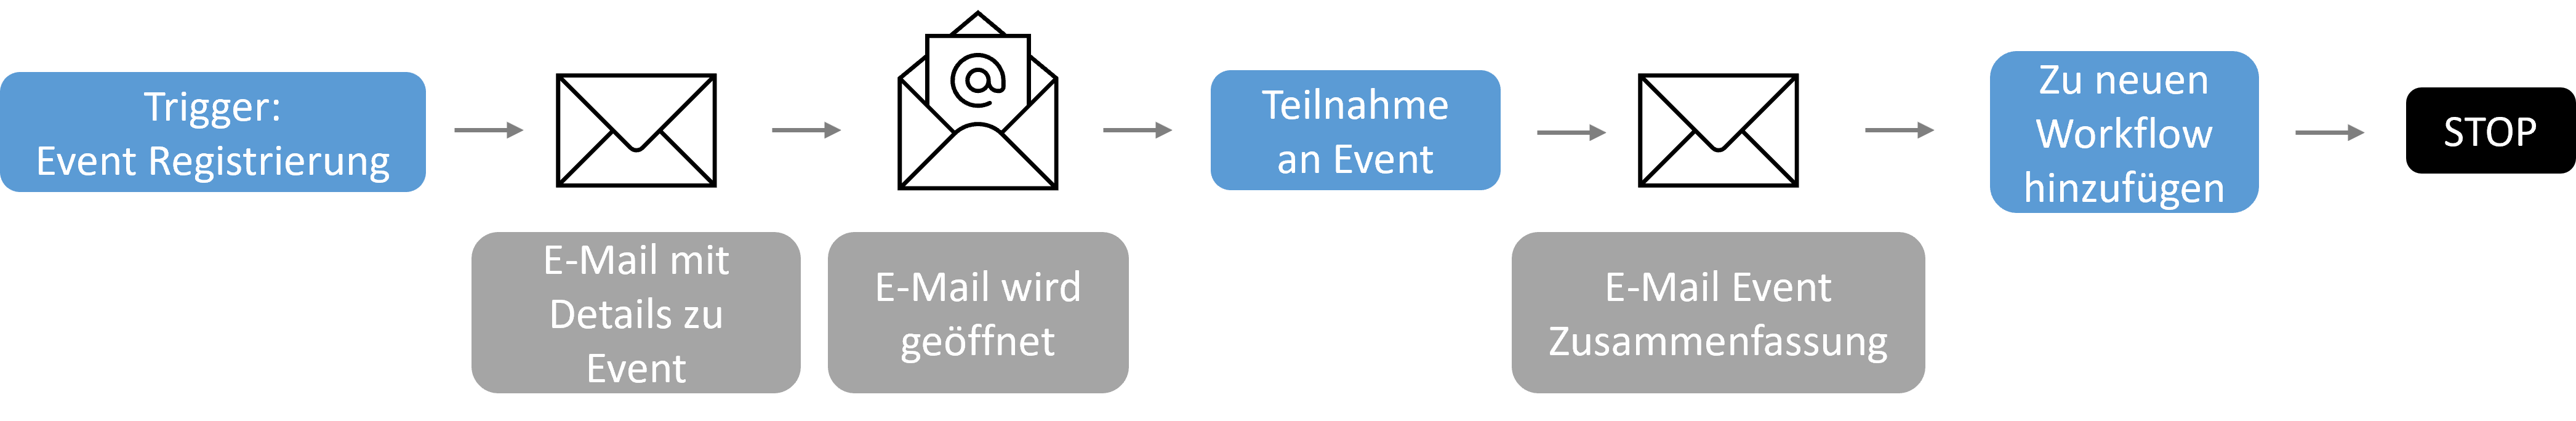 Die Grafik zeigt den Workflow von Events mittels Baumdiagramm.